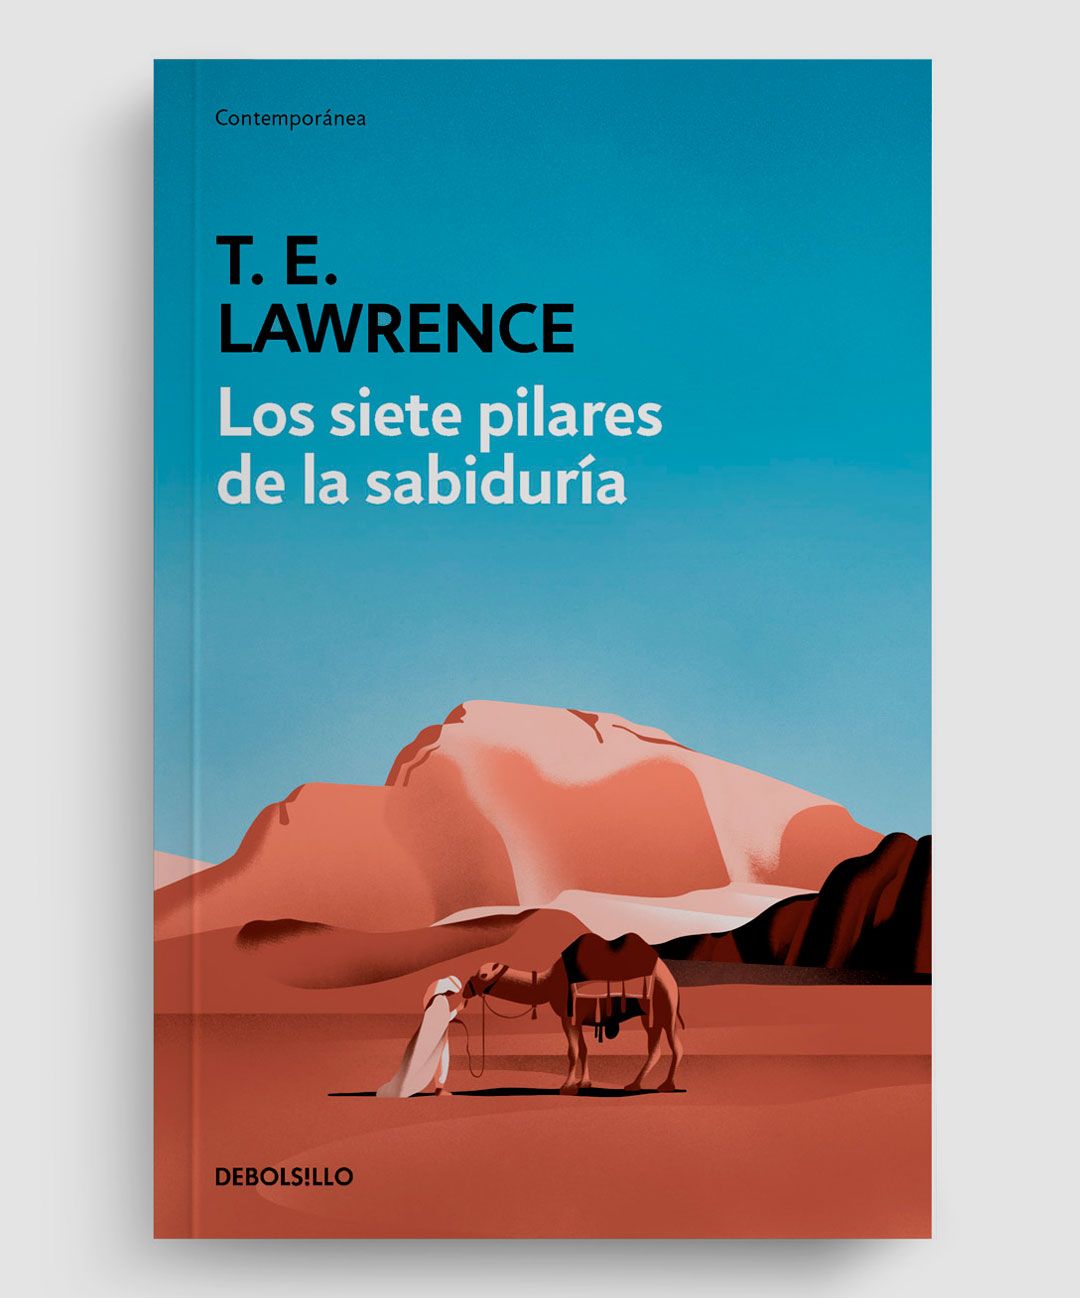 garance-illustration-garance-illustration-BBonaque-Book-cover-2_web